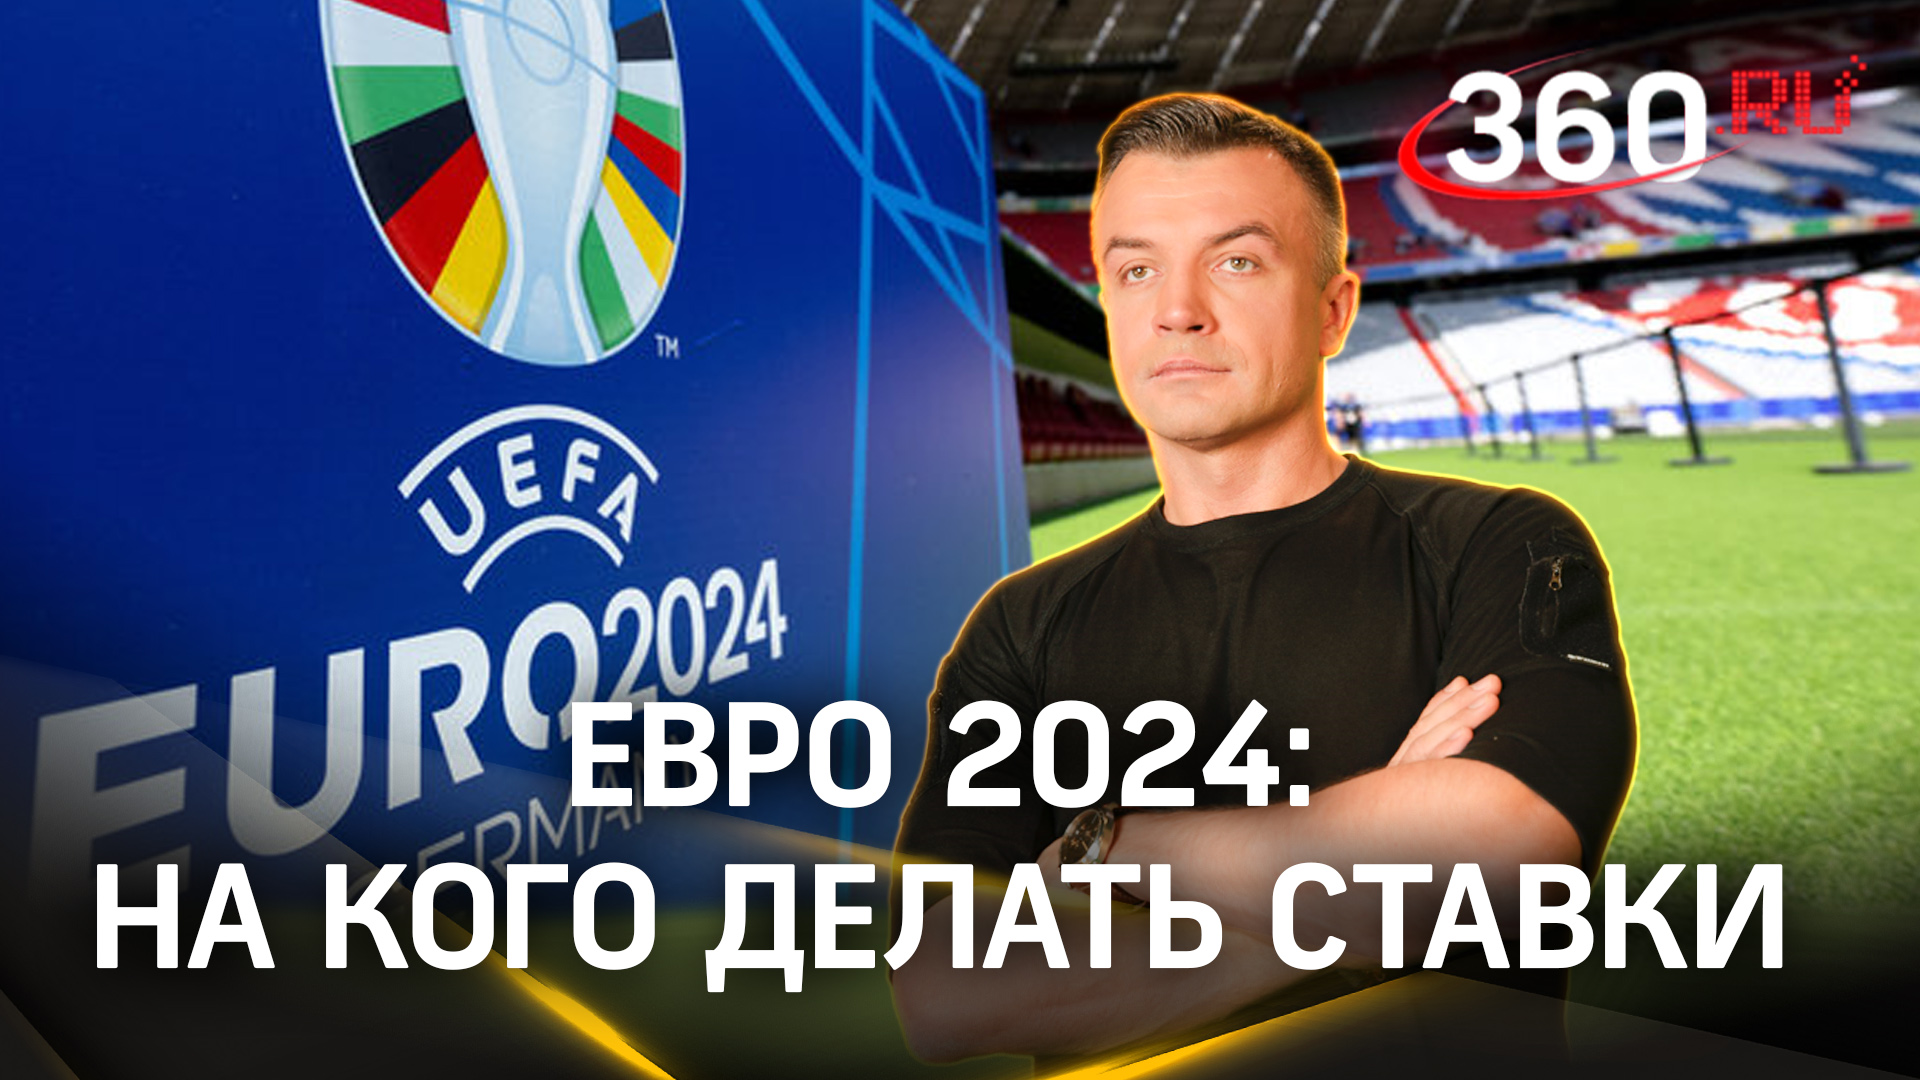 14 июня стартует Чемпионат Европы по футболу – Евро 2024. На кого ставить? Шестаков